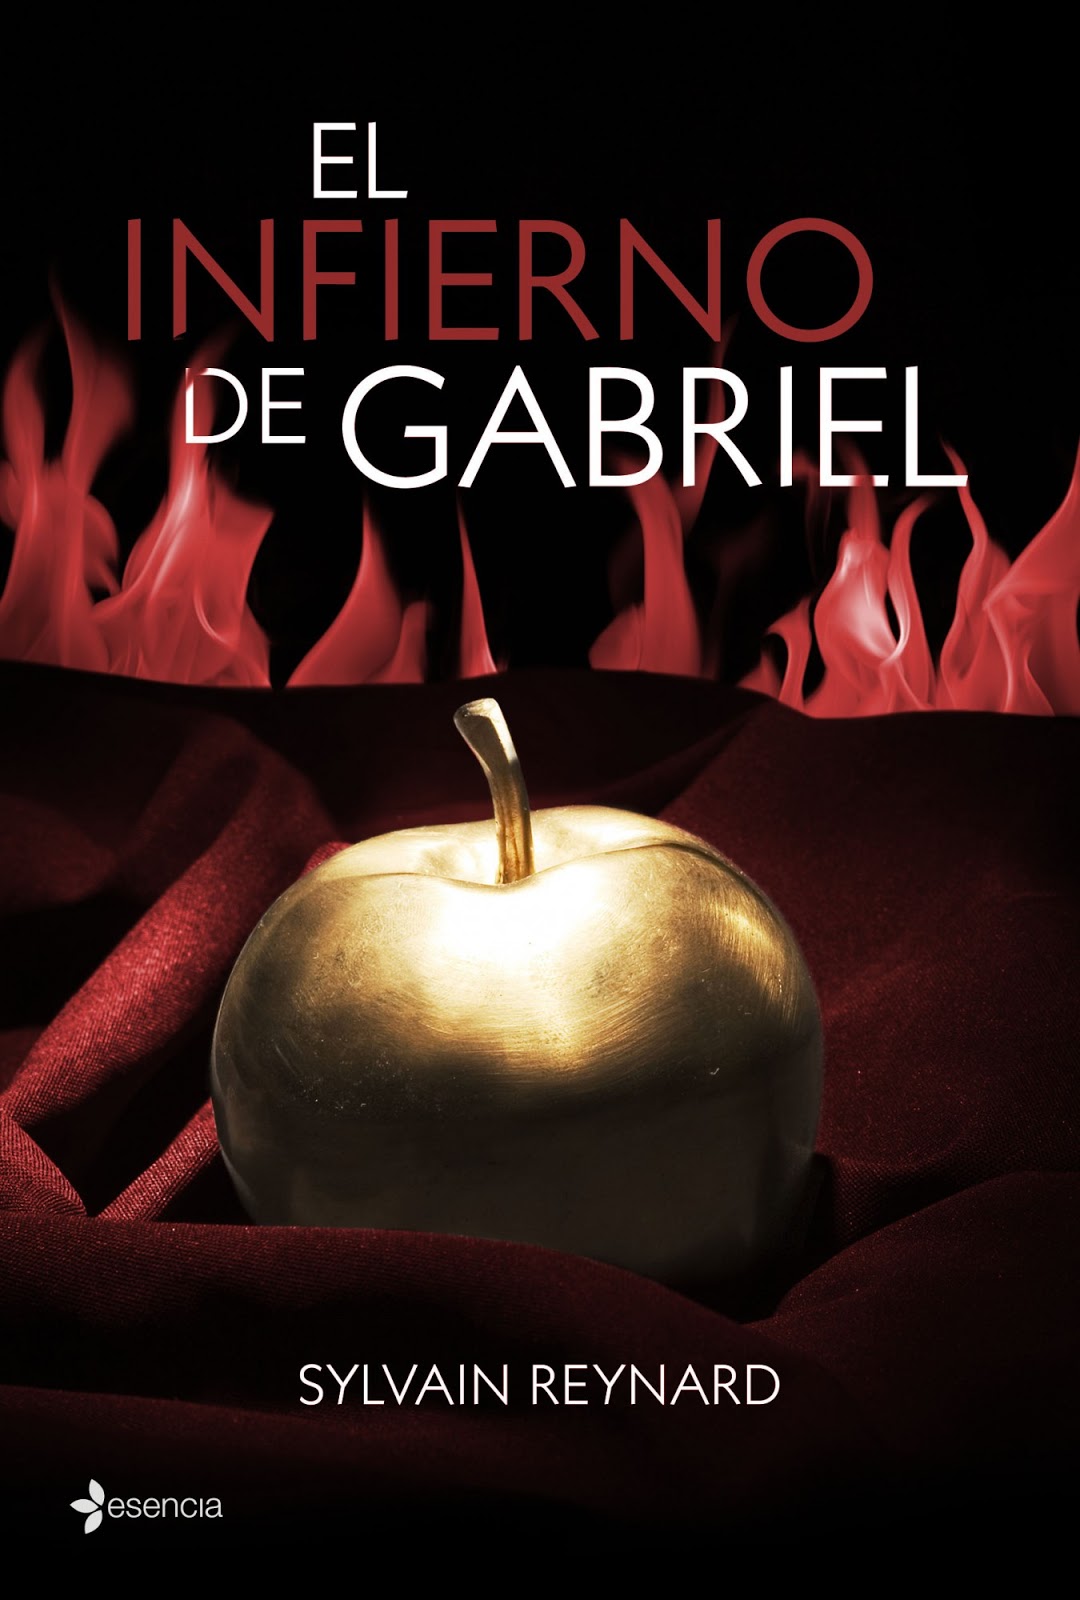 Libro de audio El Infierno de Gabriel [1] – Sylvain Reynard